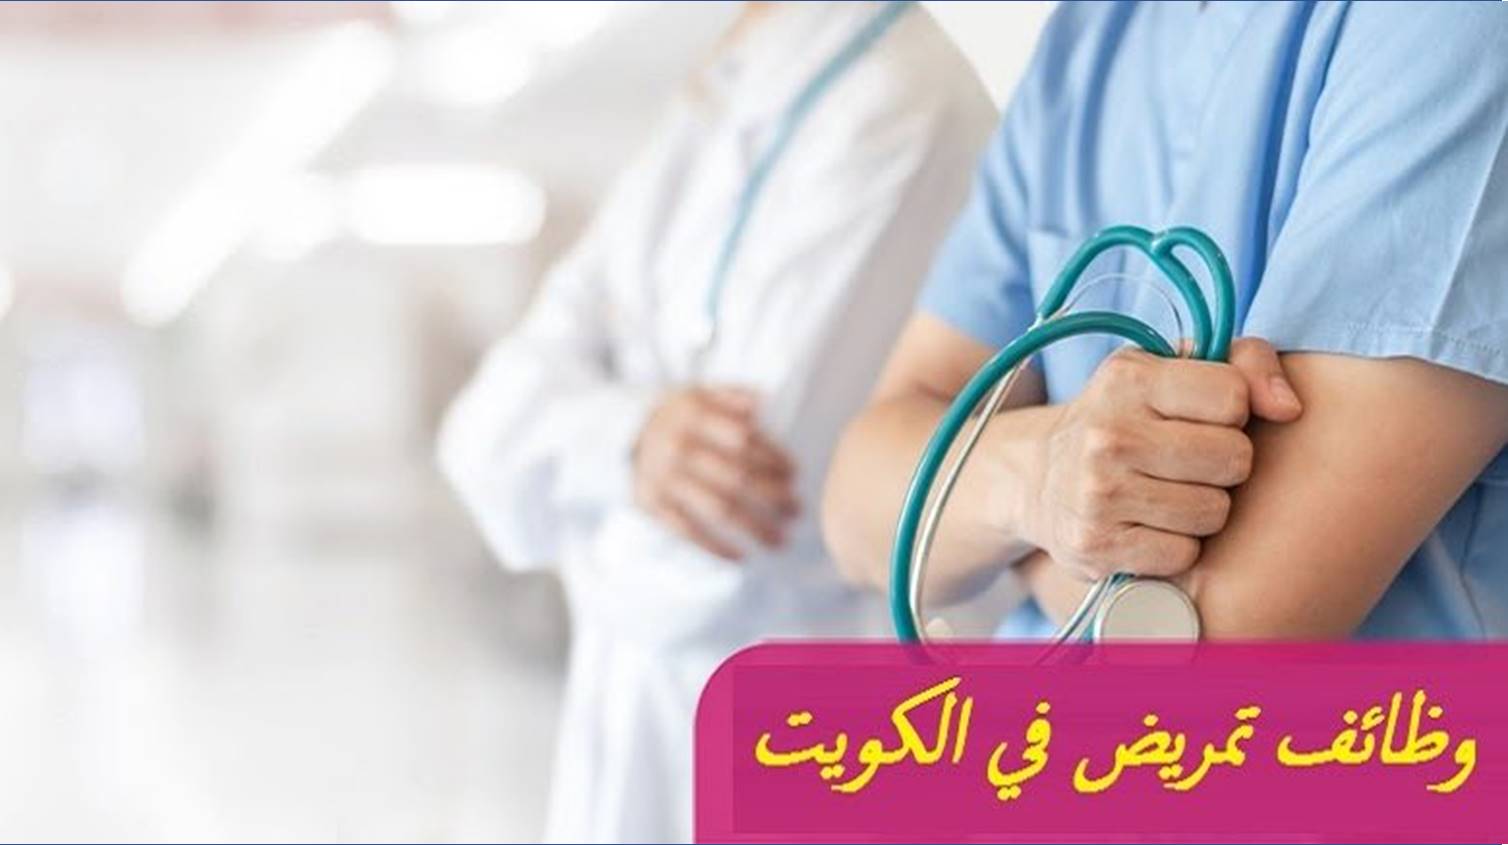 القوى العاملة تعلن بدء قبول طلبات العمل بالكويت لتخصص ممرضات